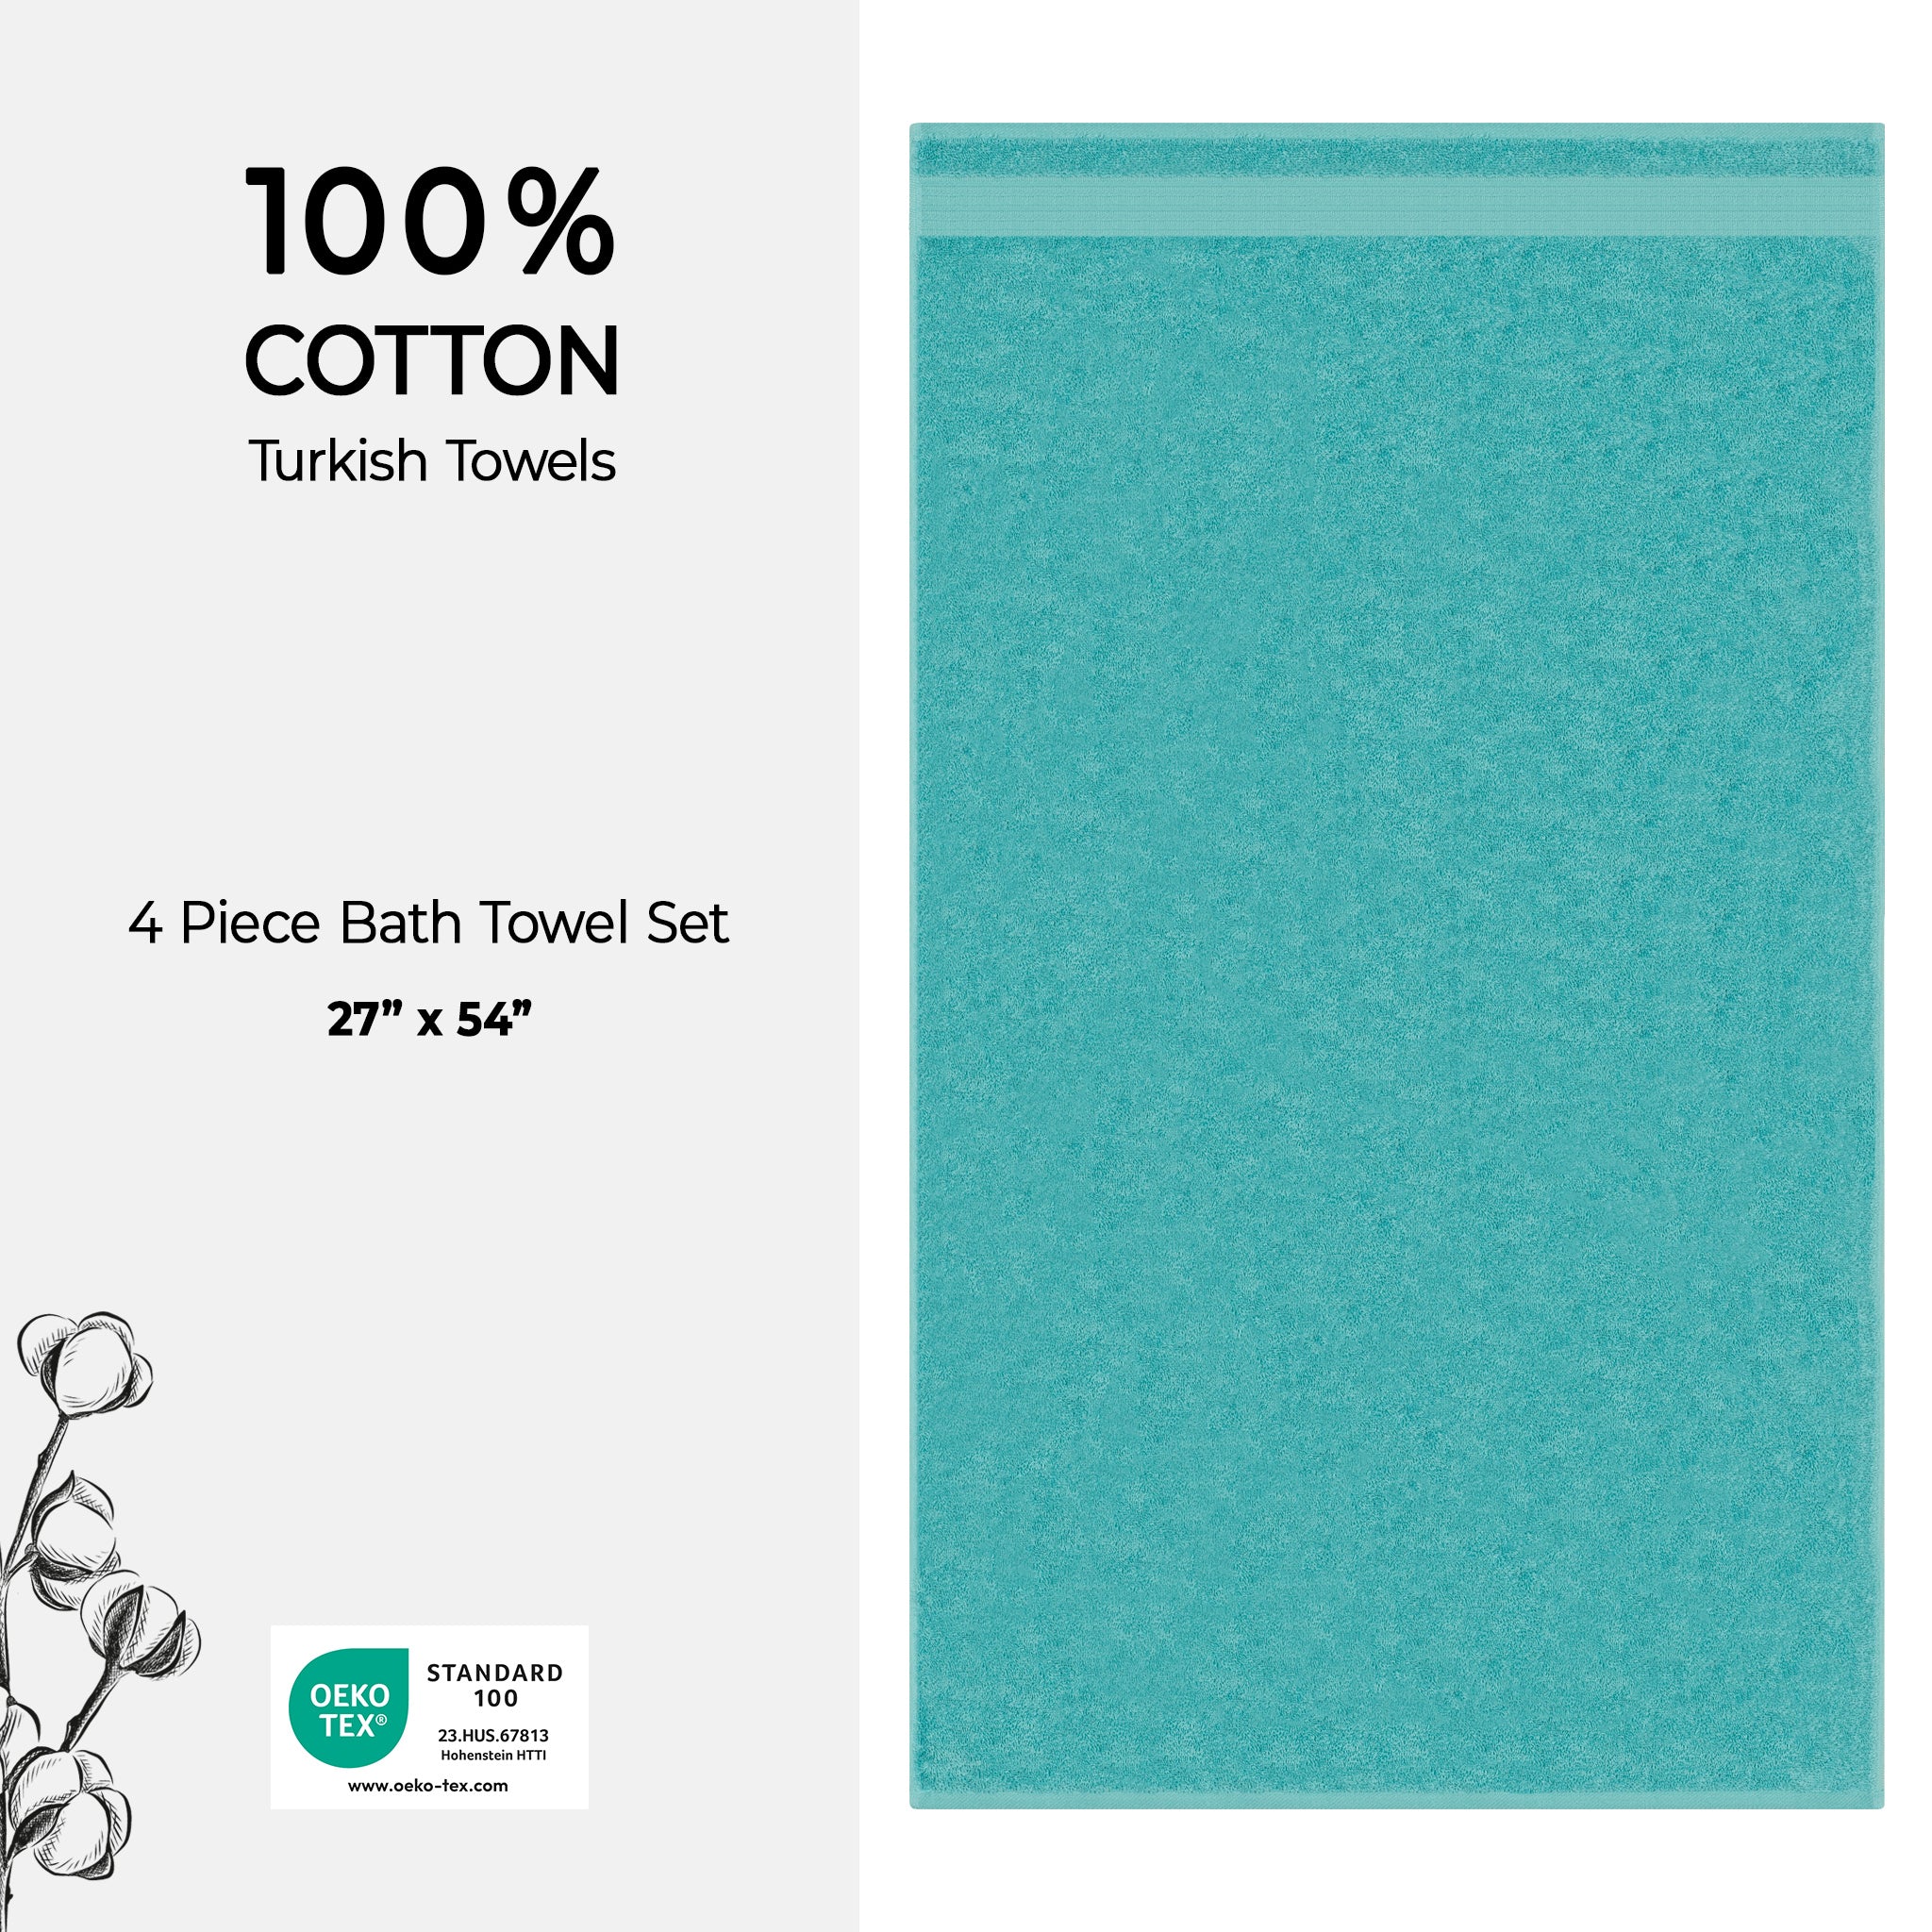 American Soft Linen Bekos 100% Cotton Turkish Towels, 4 Piece Bath Towel Set -turquoise-blue-04